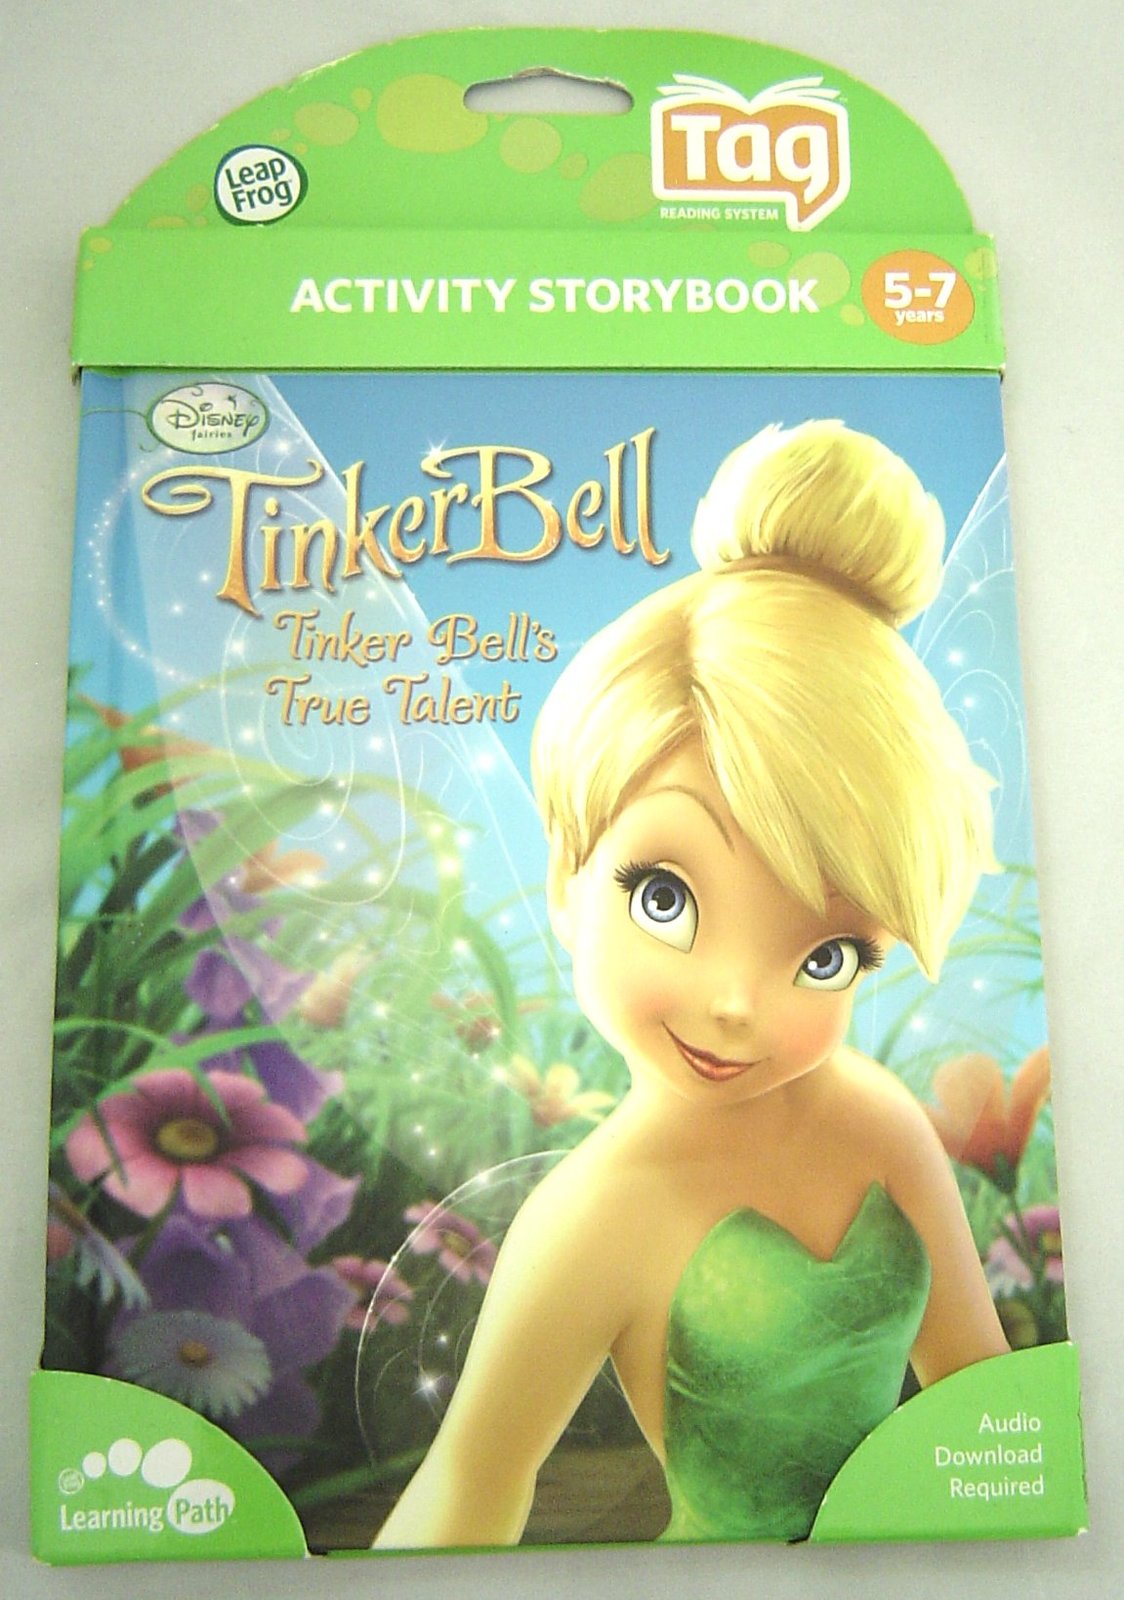  Leap Frog Tag Book Disney Fairies Tinker Bell’s True Talent NIP - $9.99